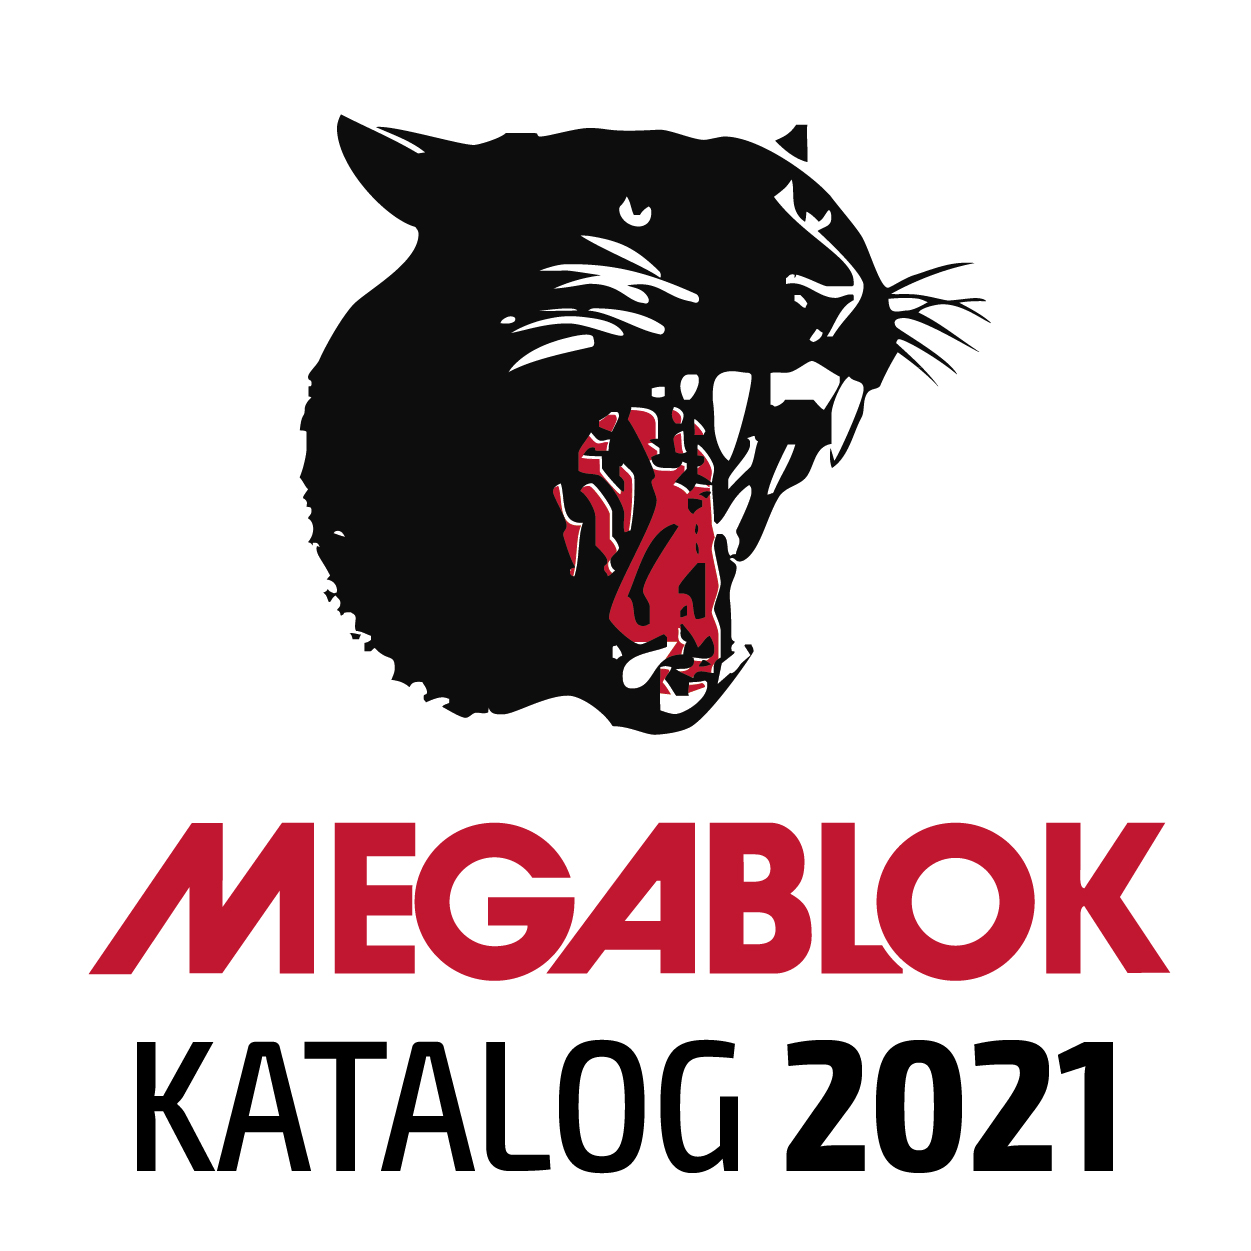 KATALOG 2021